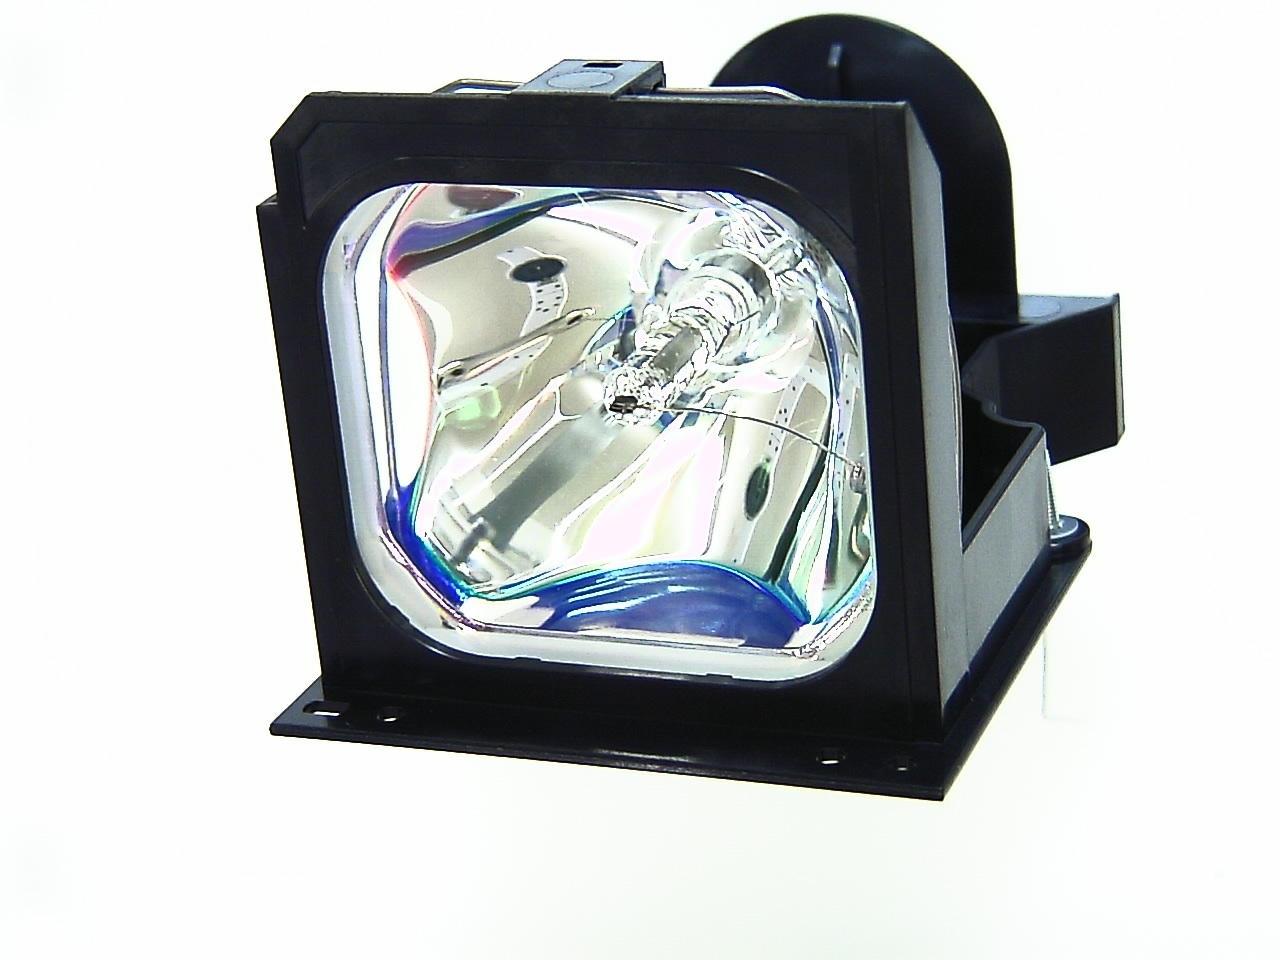 Foto lámpara para saville av s-1000 proyector